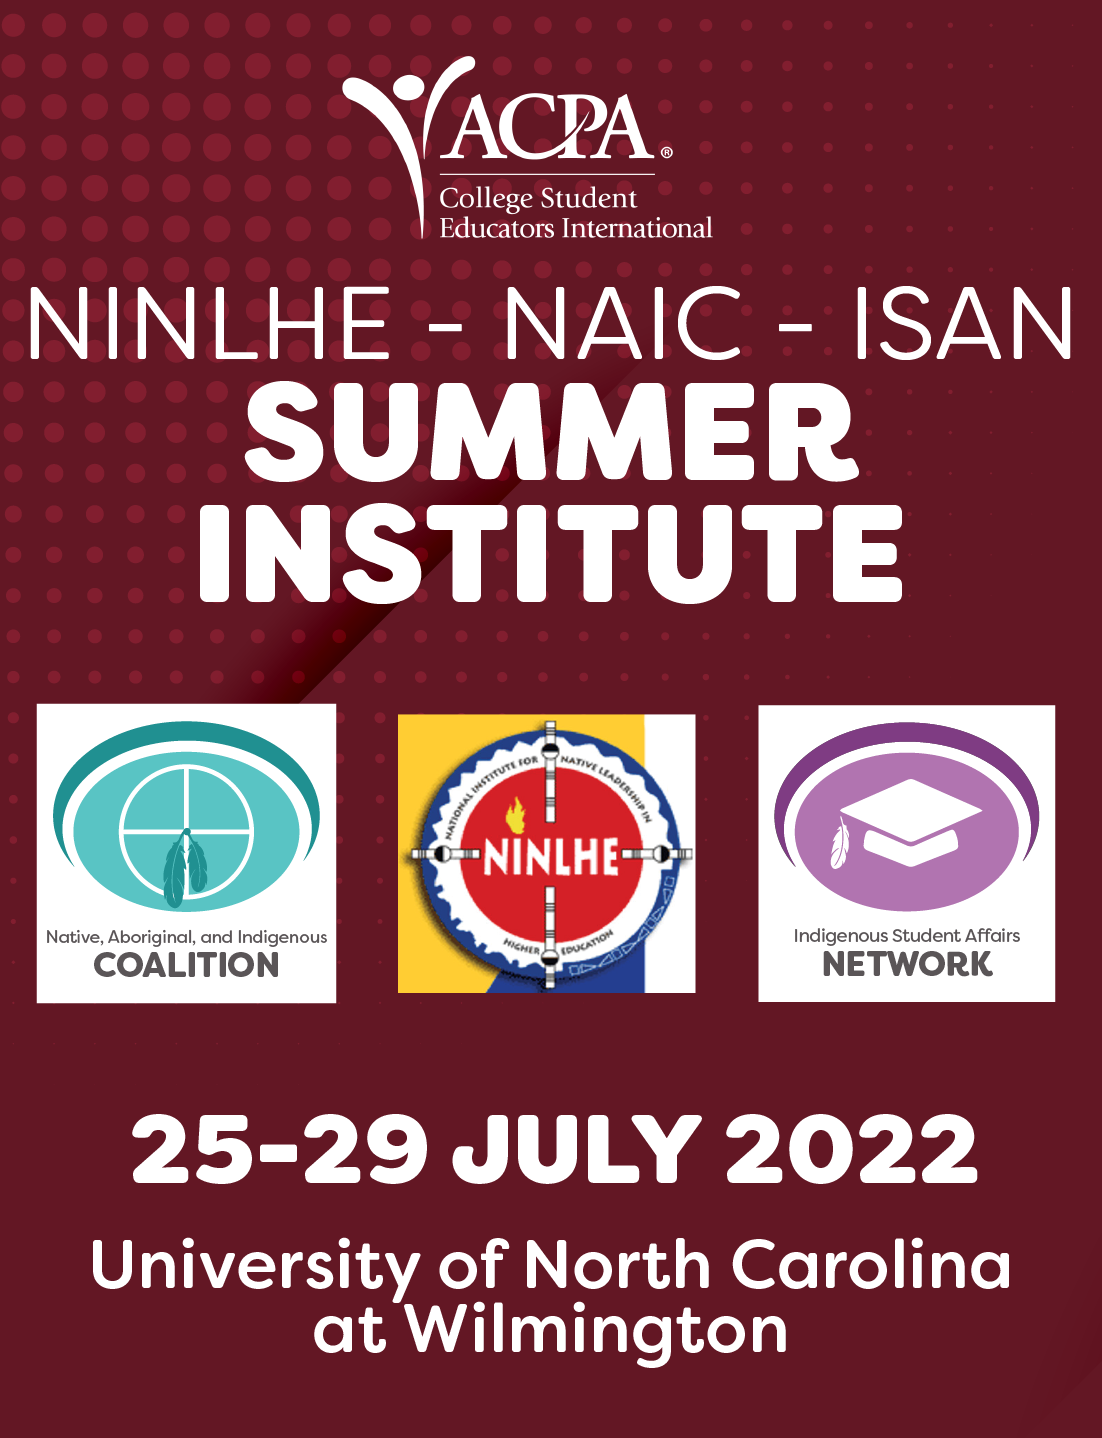 NINLHE, NAIC, ISAN暑期学院. 2022年7月25-29日博天堂官方威尔明顿分校